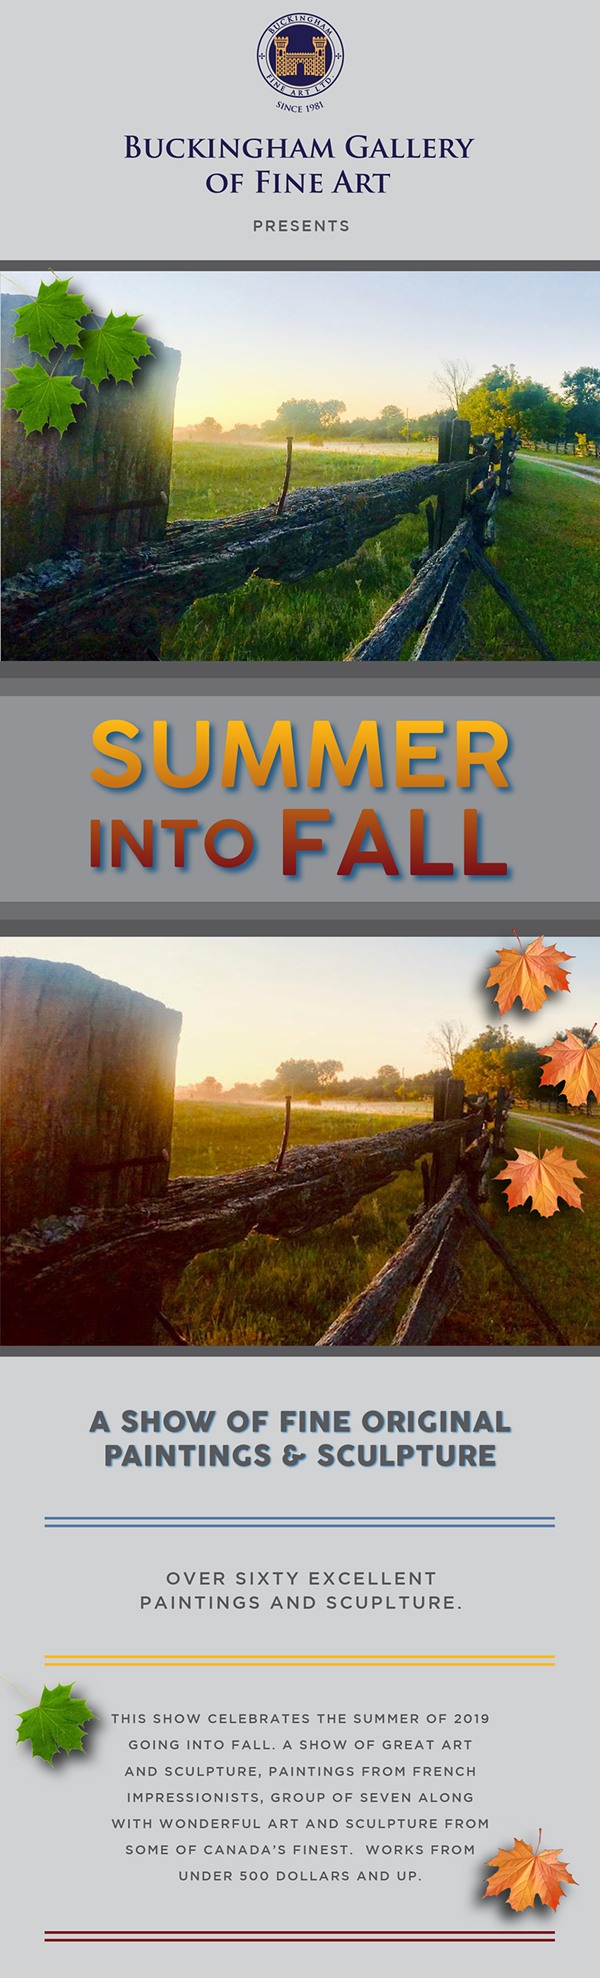 Summer into Fall Show - Buckingham Fine Art